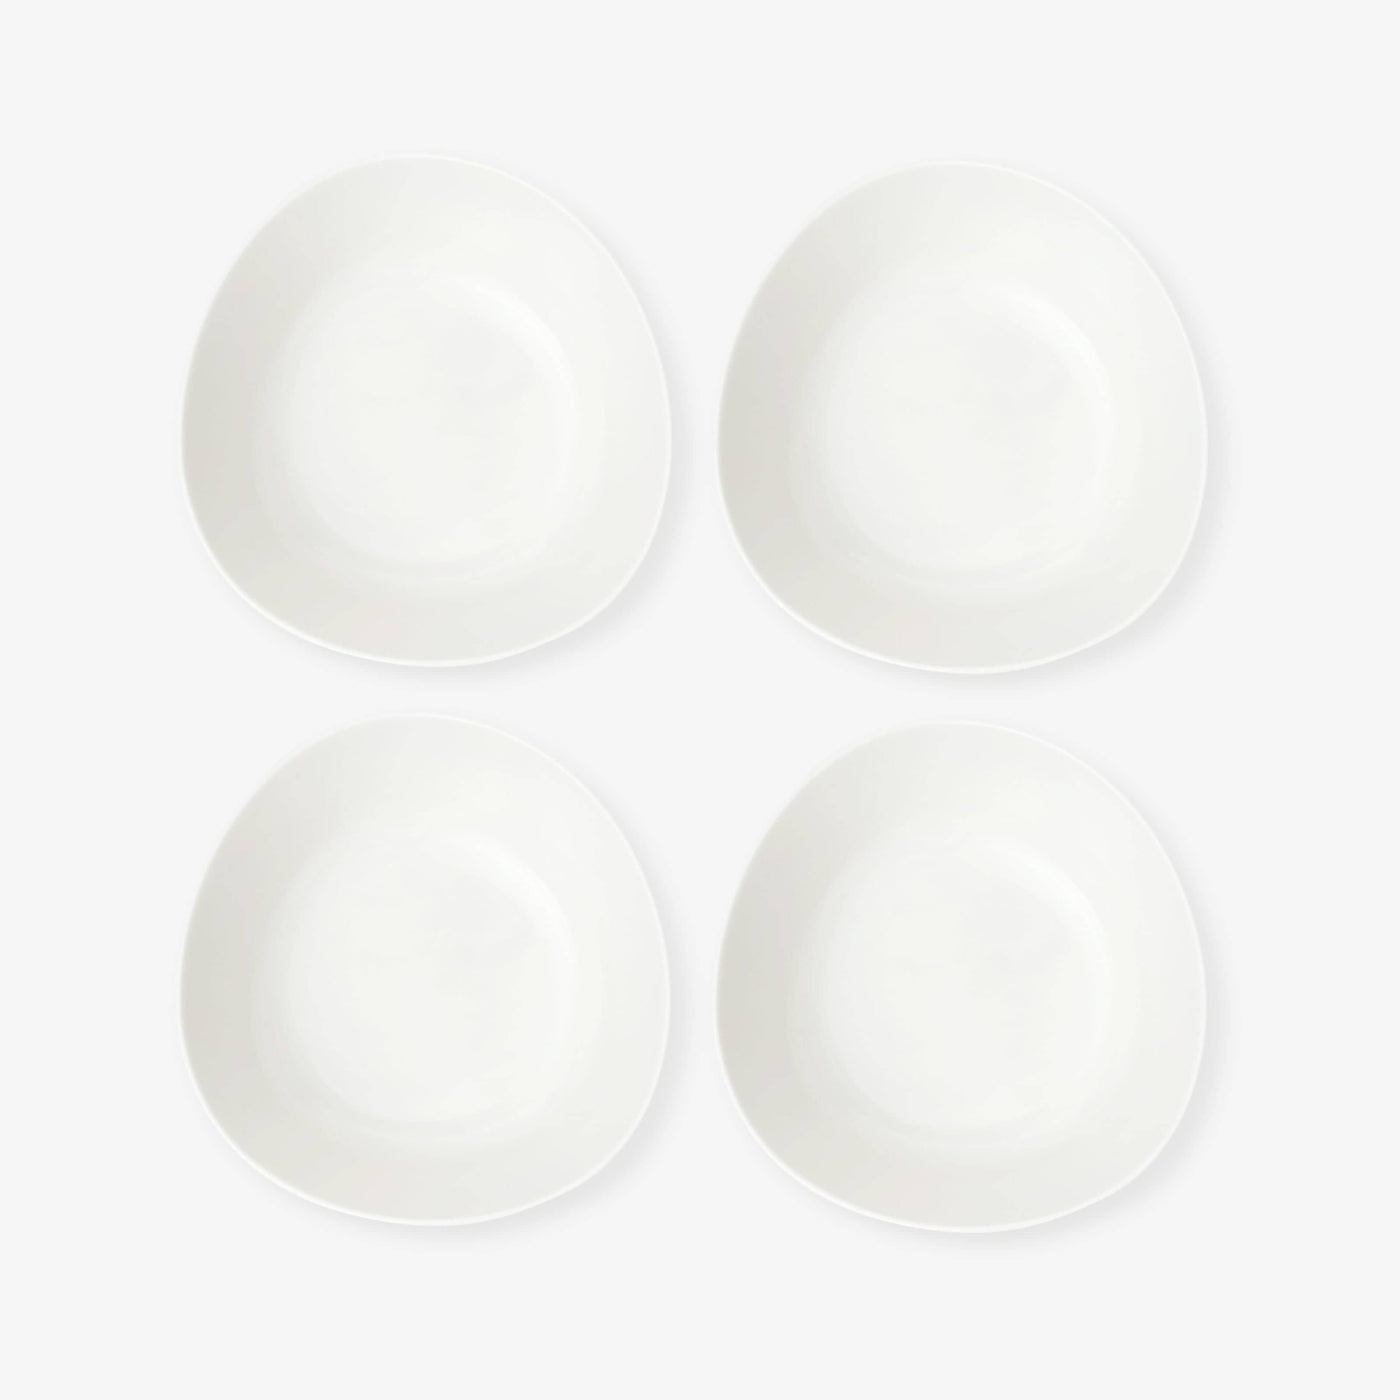 Garde Set of 4 Bowls, White, 15 cm Bowls sazy.com